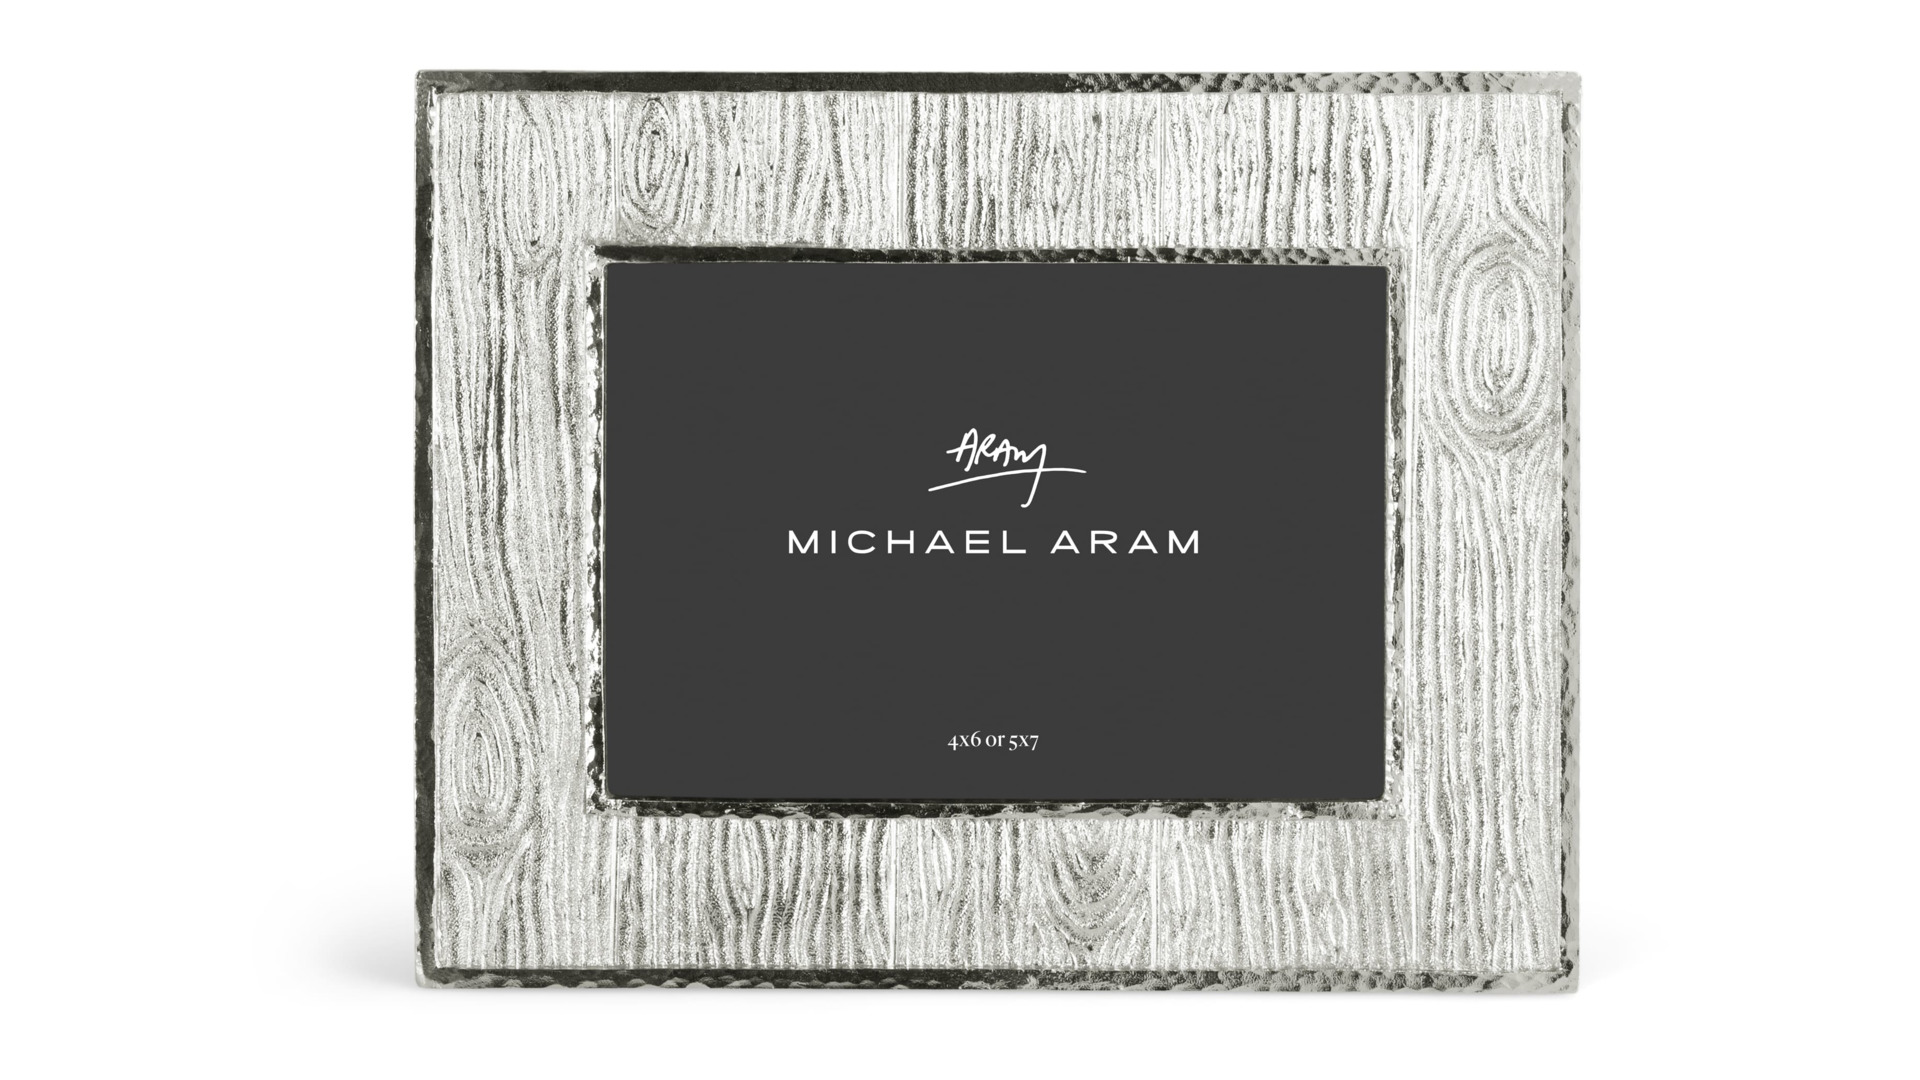 Рамка для фото Michael Aram Плющ и дуб 13х18 см, сталь нержавеющая